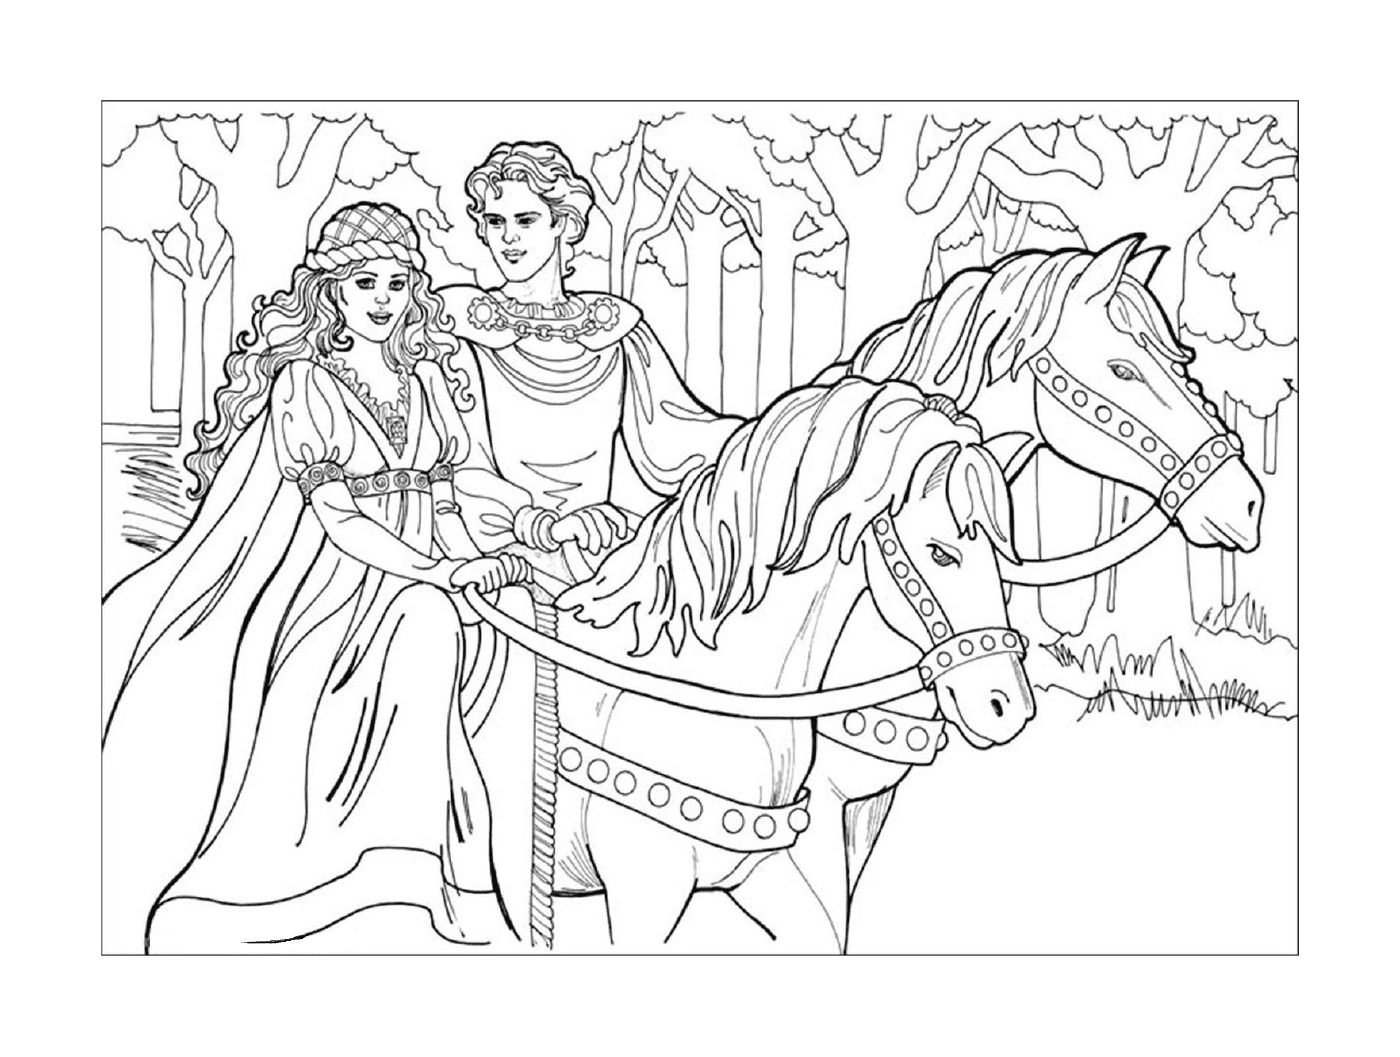  迪斯尼公主,一对夫妇骑马 